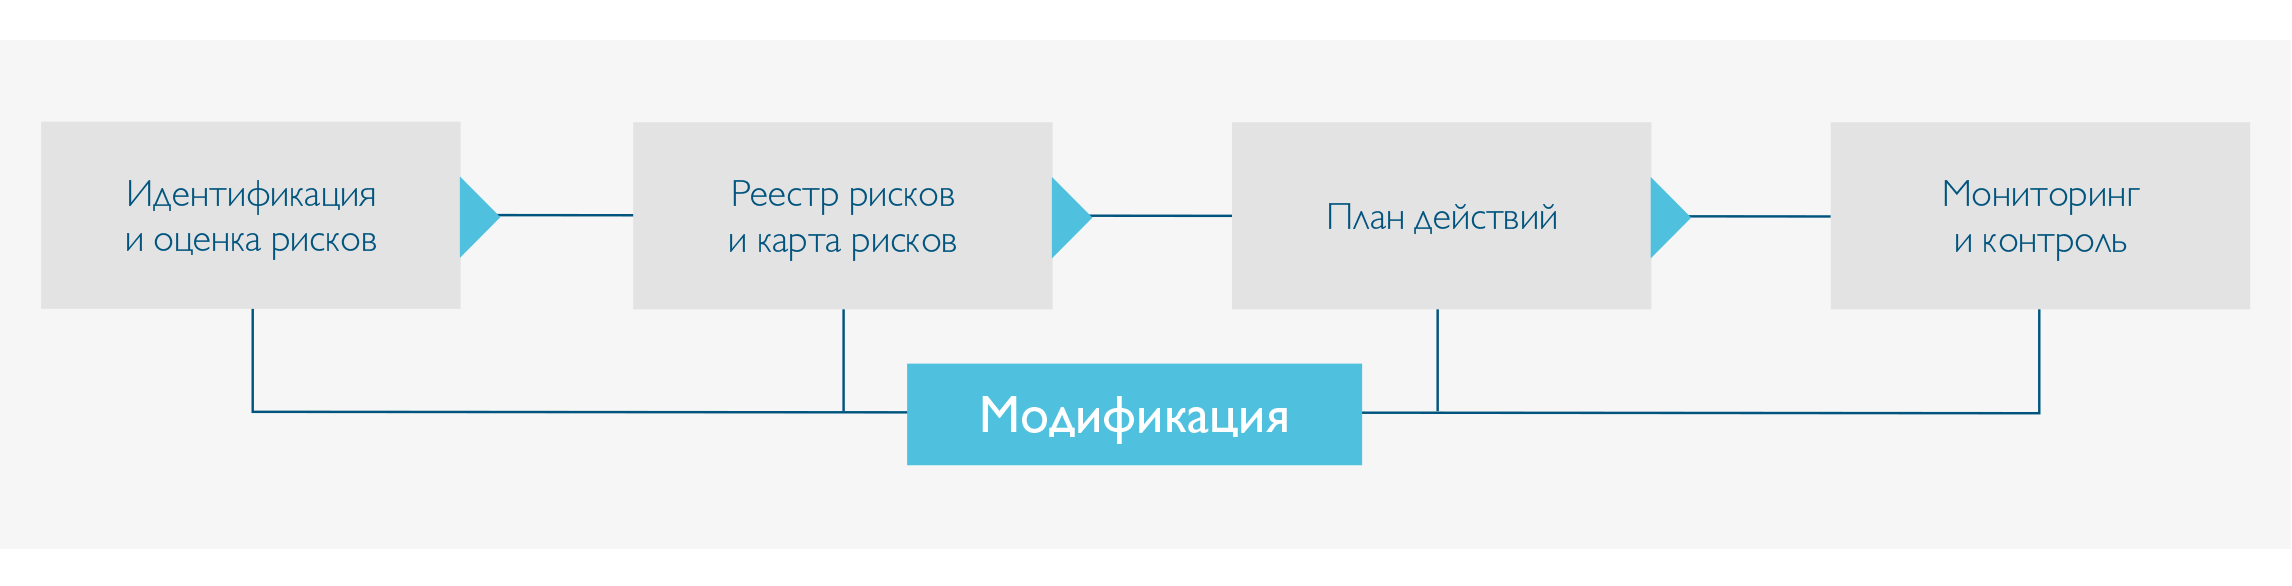 risk-framework-management-ru.png